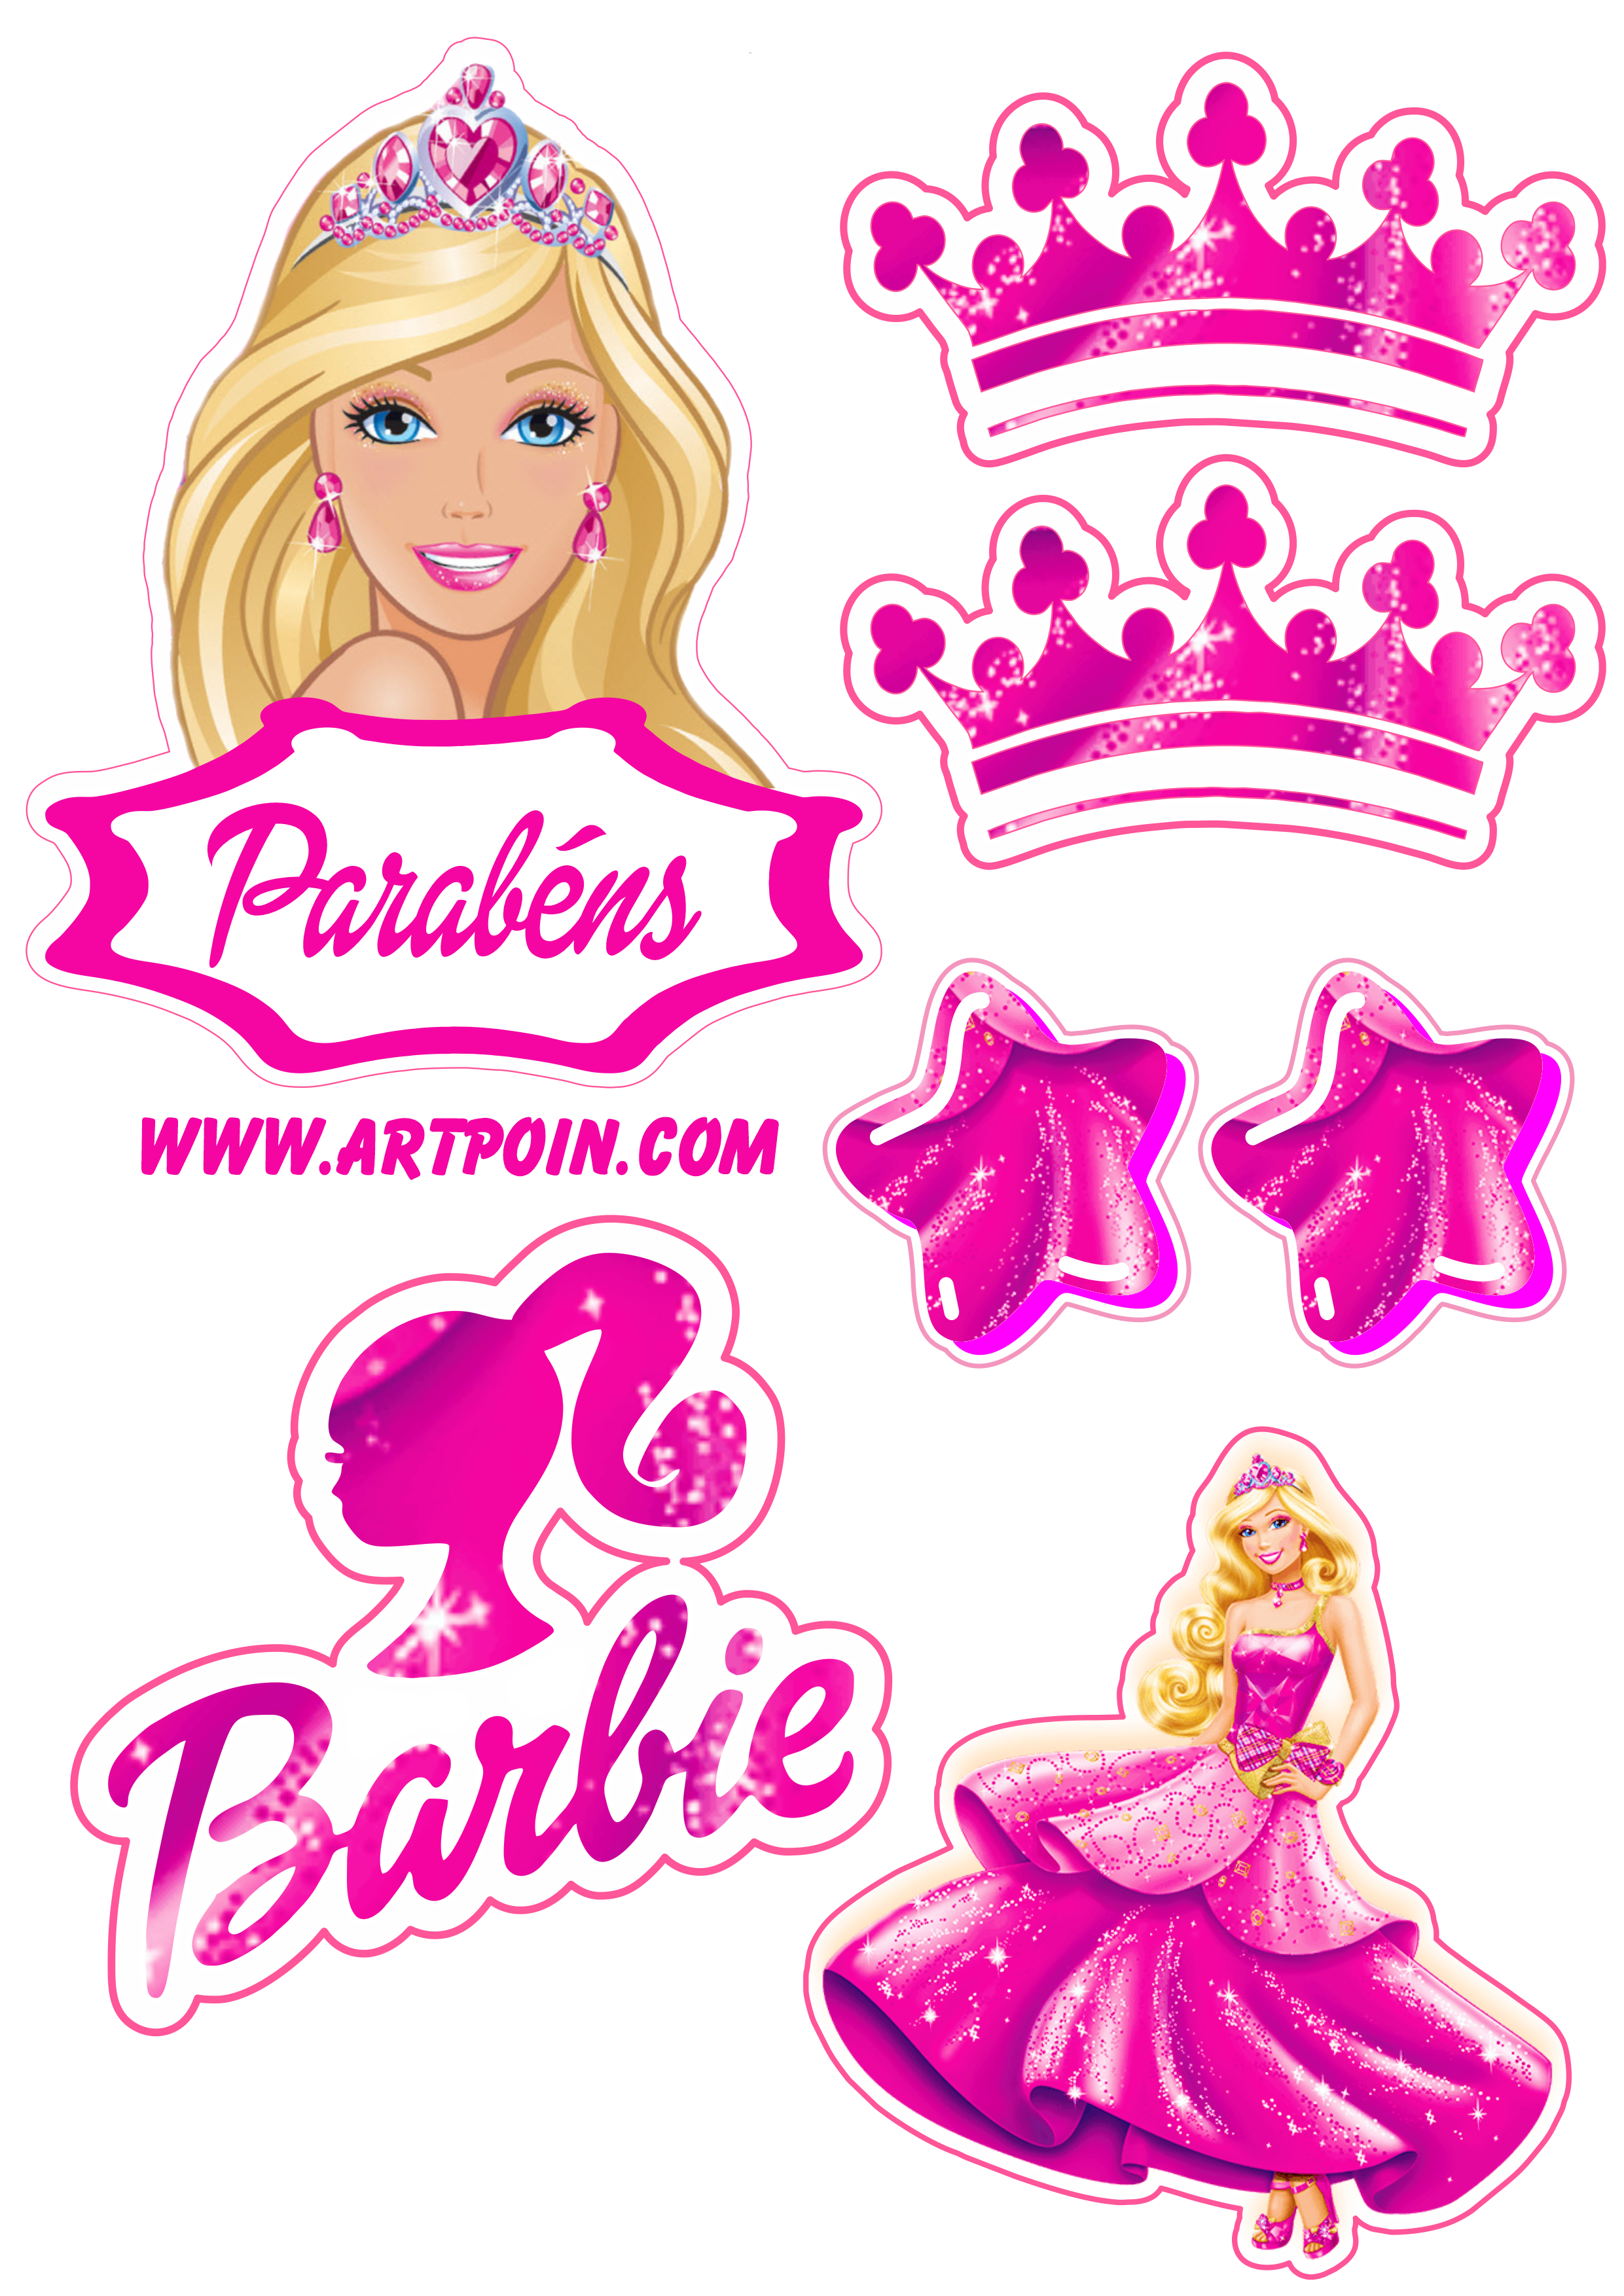 Convite Barbie Estrela para editar